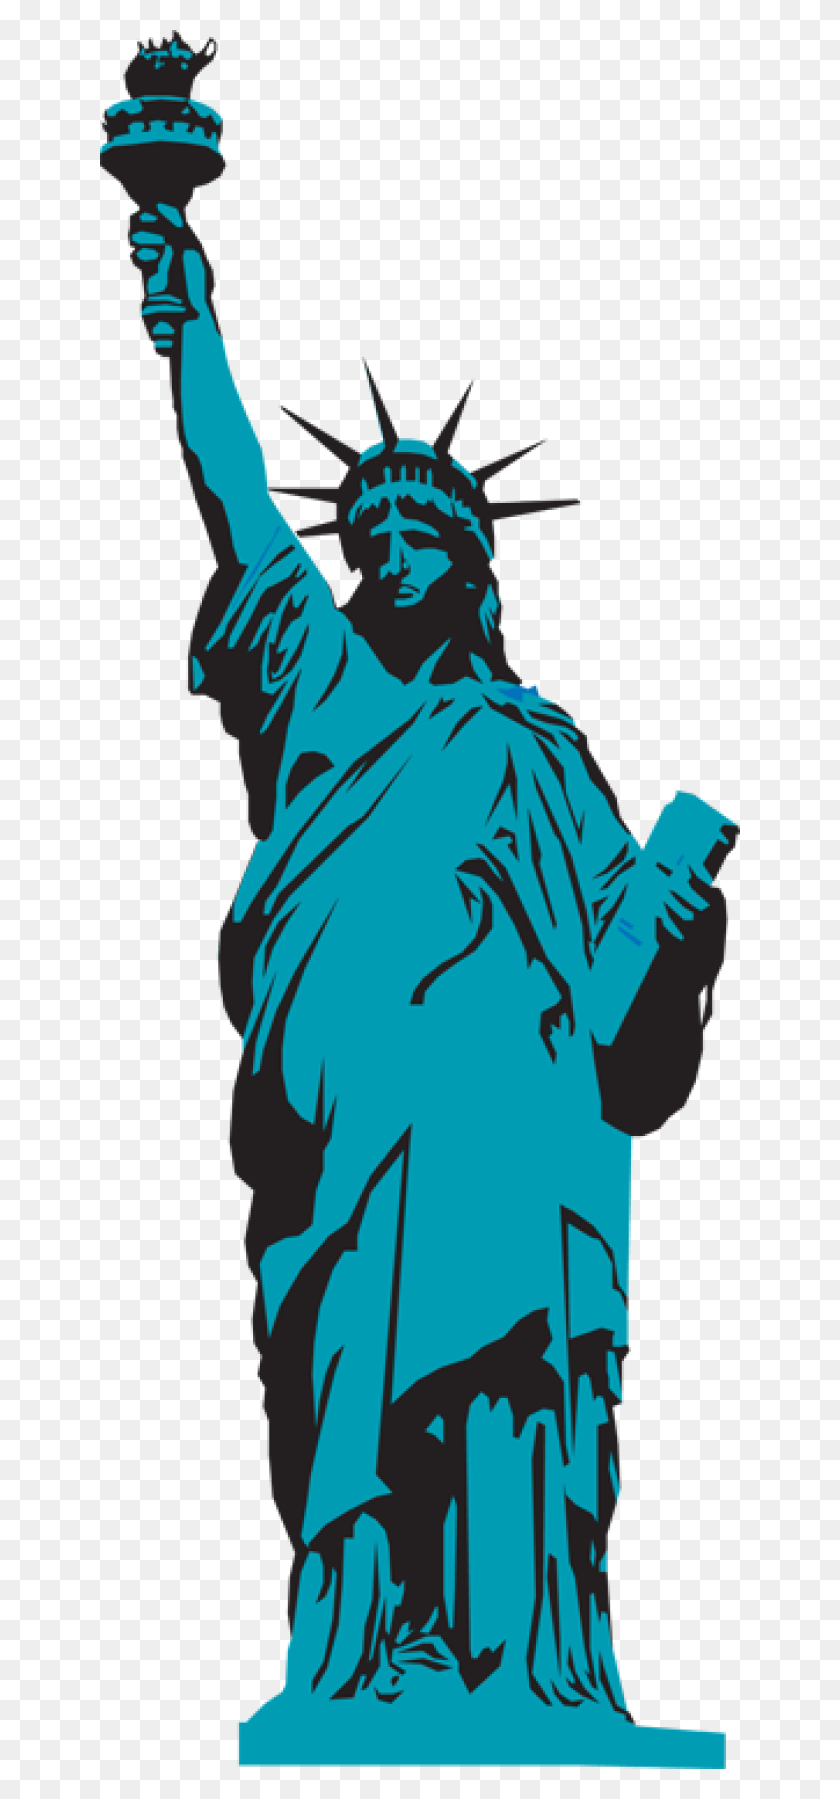 640x1739 Бесплатный Клипарт Статуя Свободы - Бесплатный Клипарт Викингов